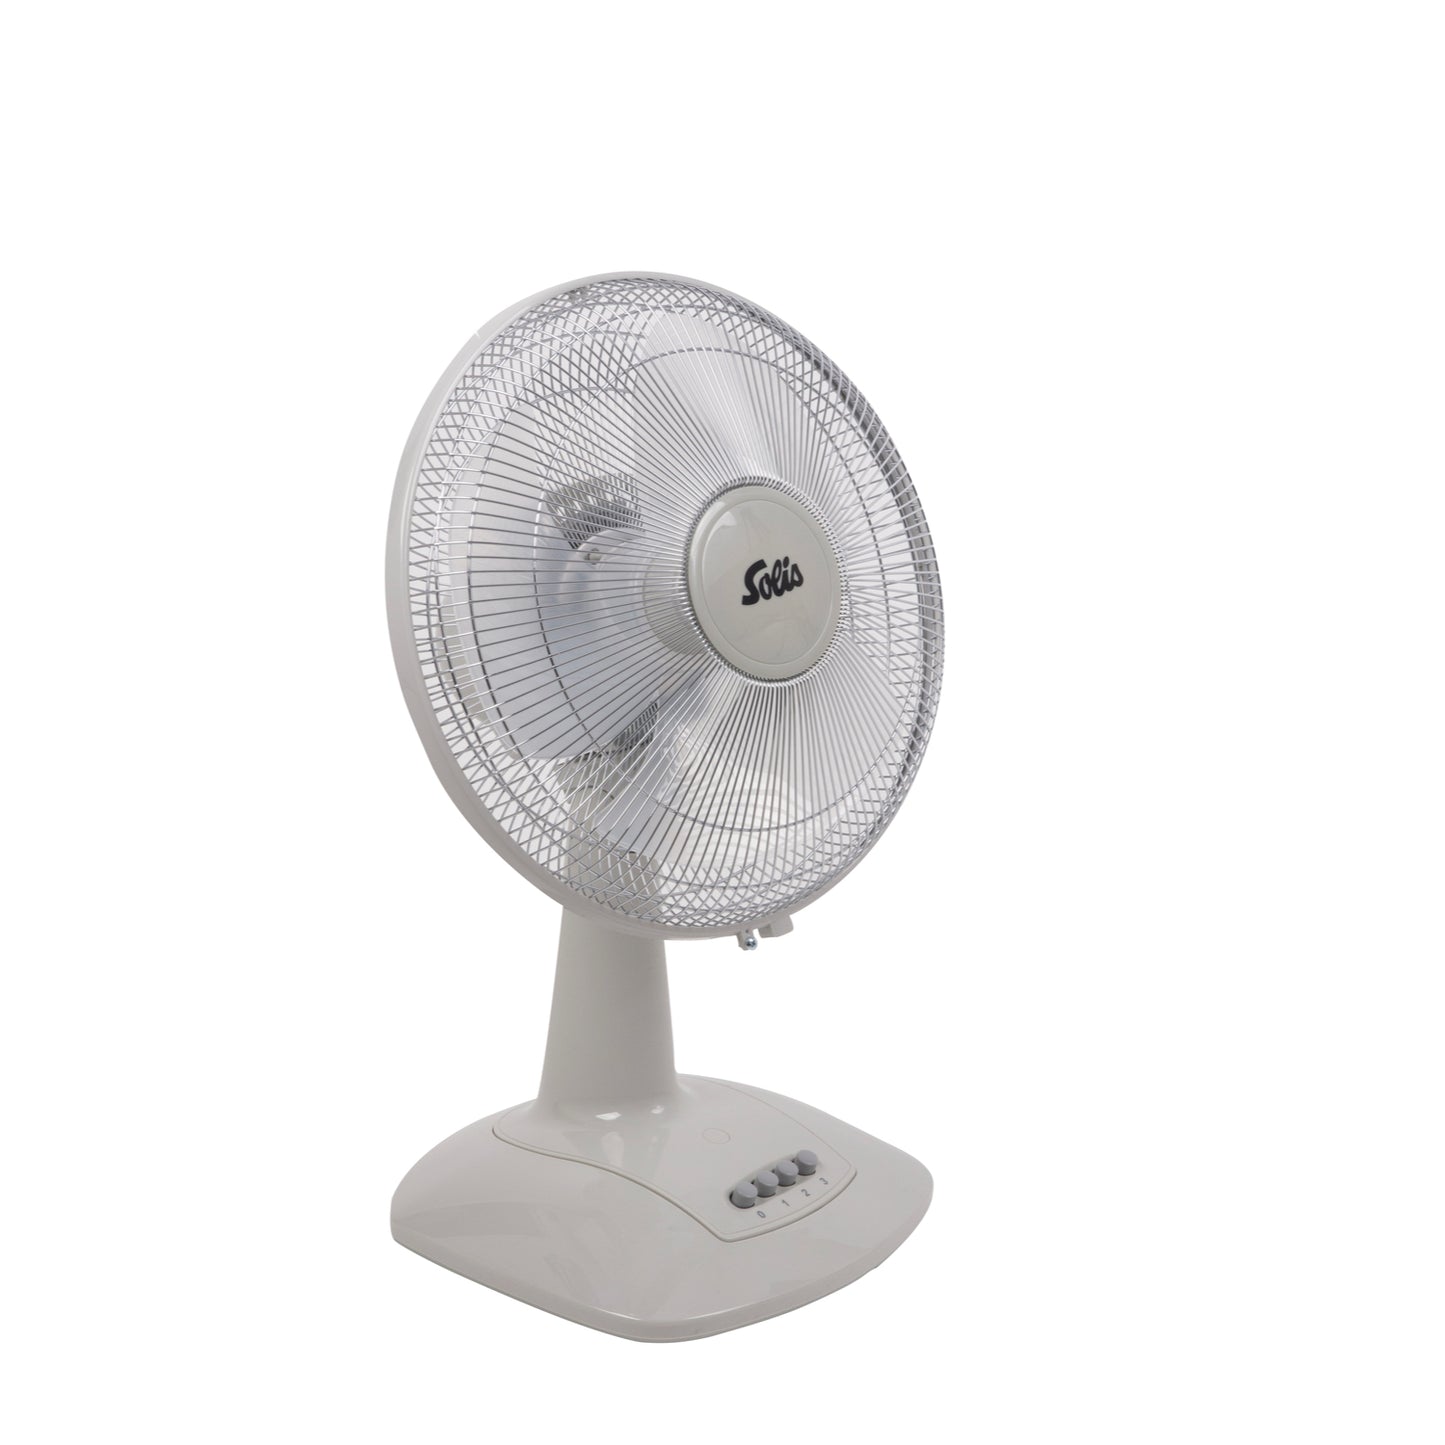 Solis 300mm Ventilator Desk Fan